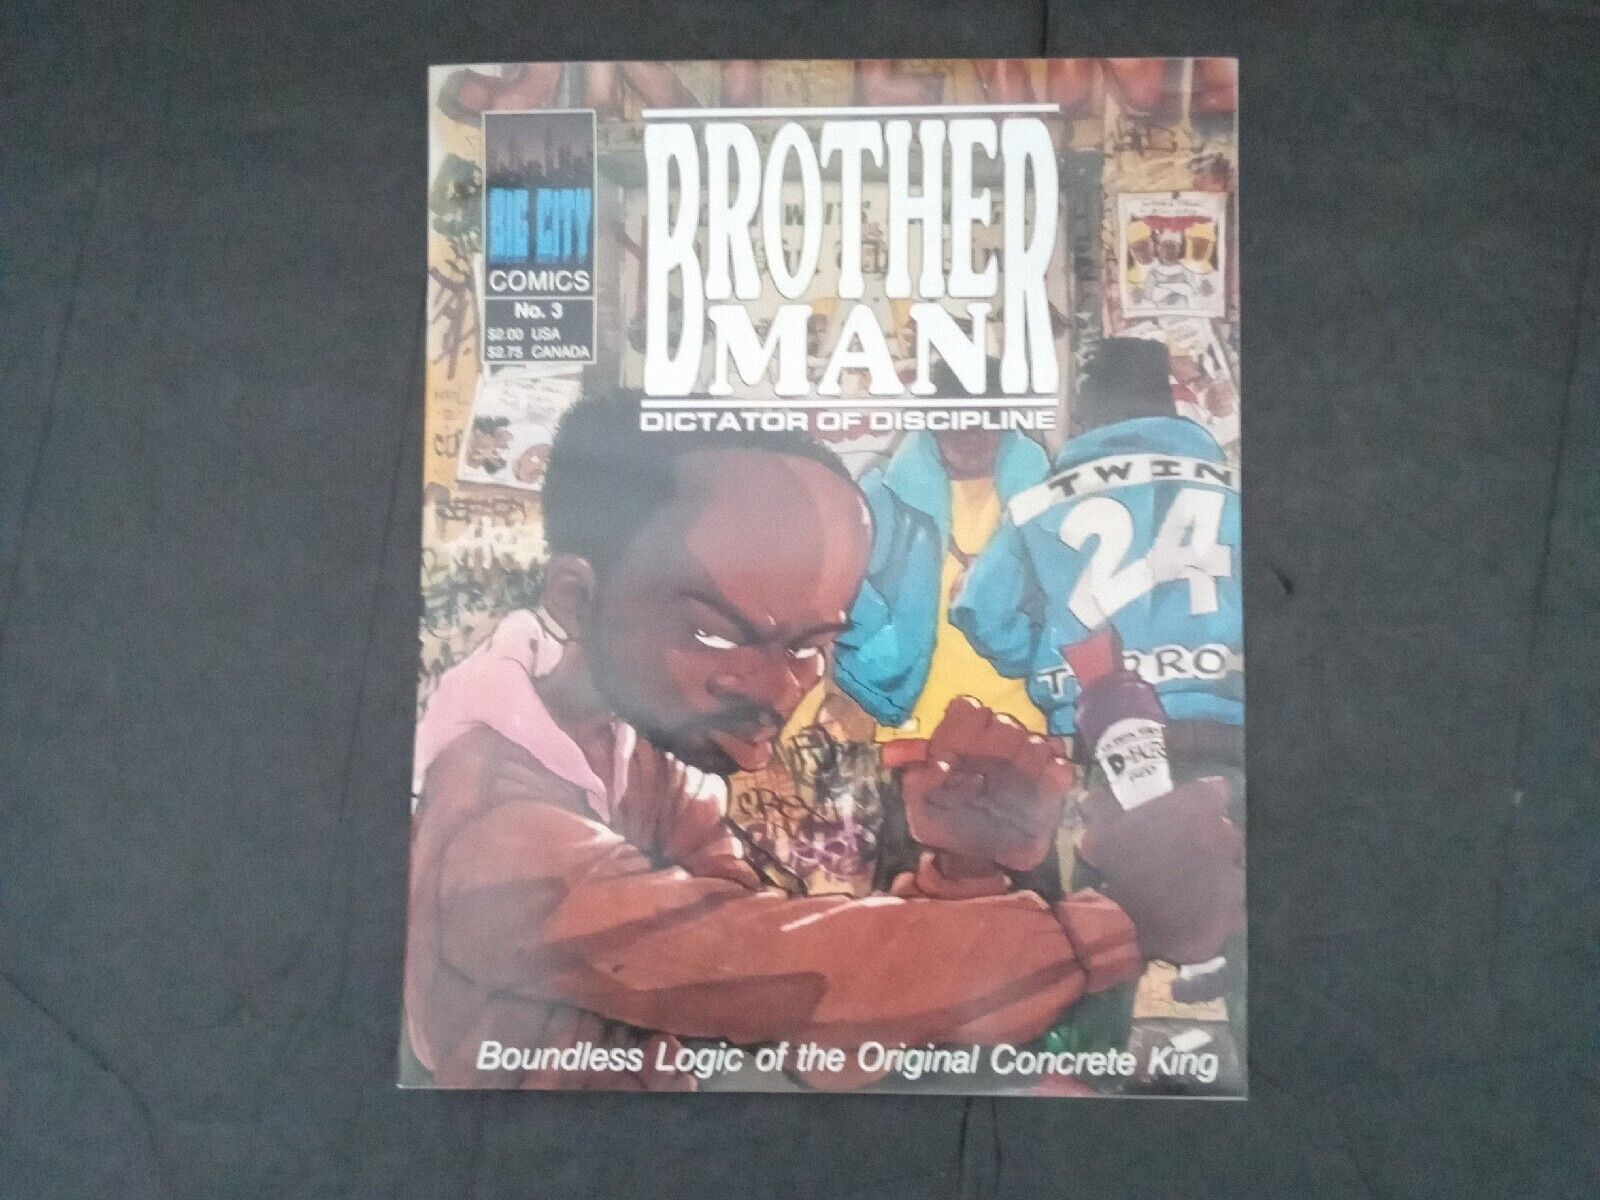 Big City Comics No. 3 Brother Man Dictator of Discipline Signed Copy 